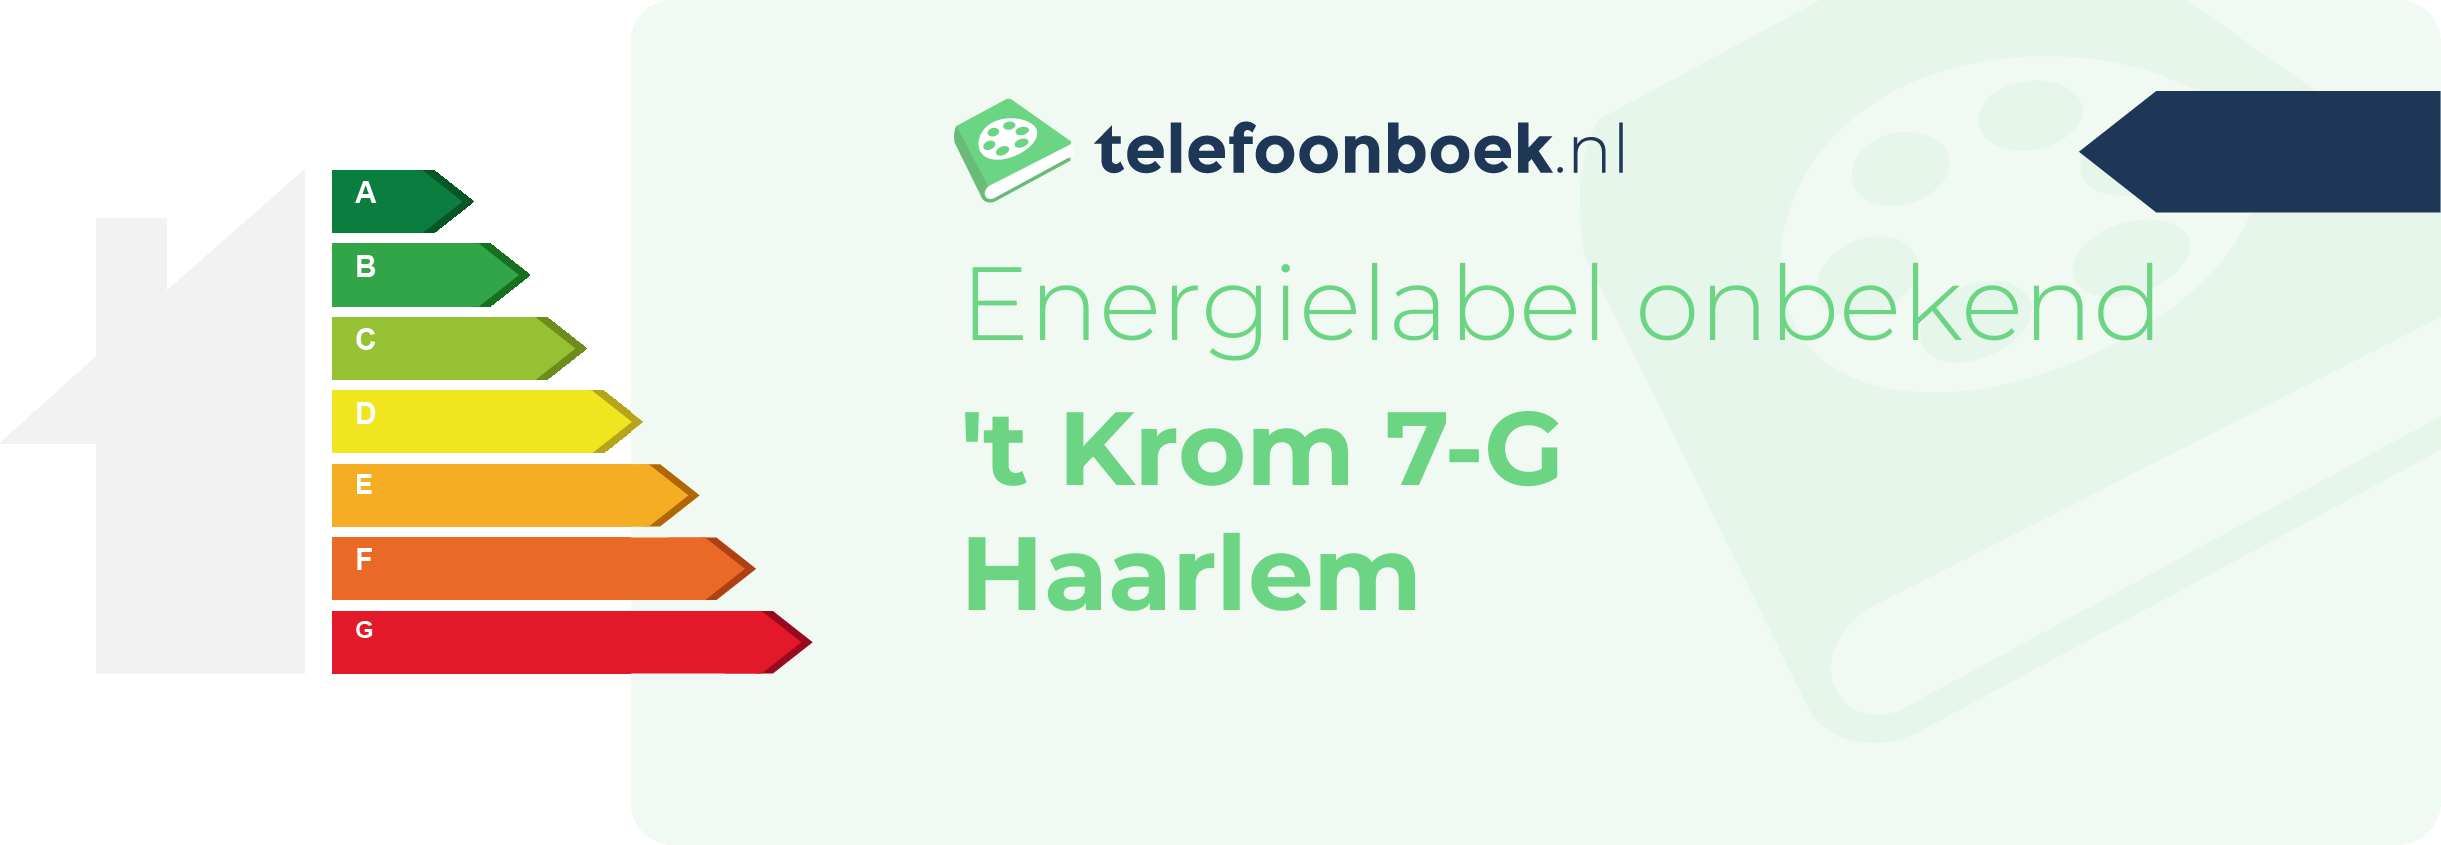 Energielabel 't Krom 7-G Haarlem